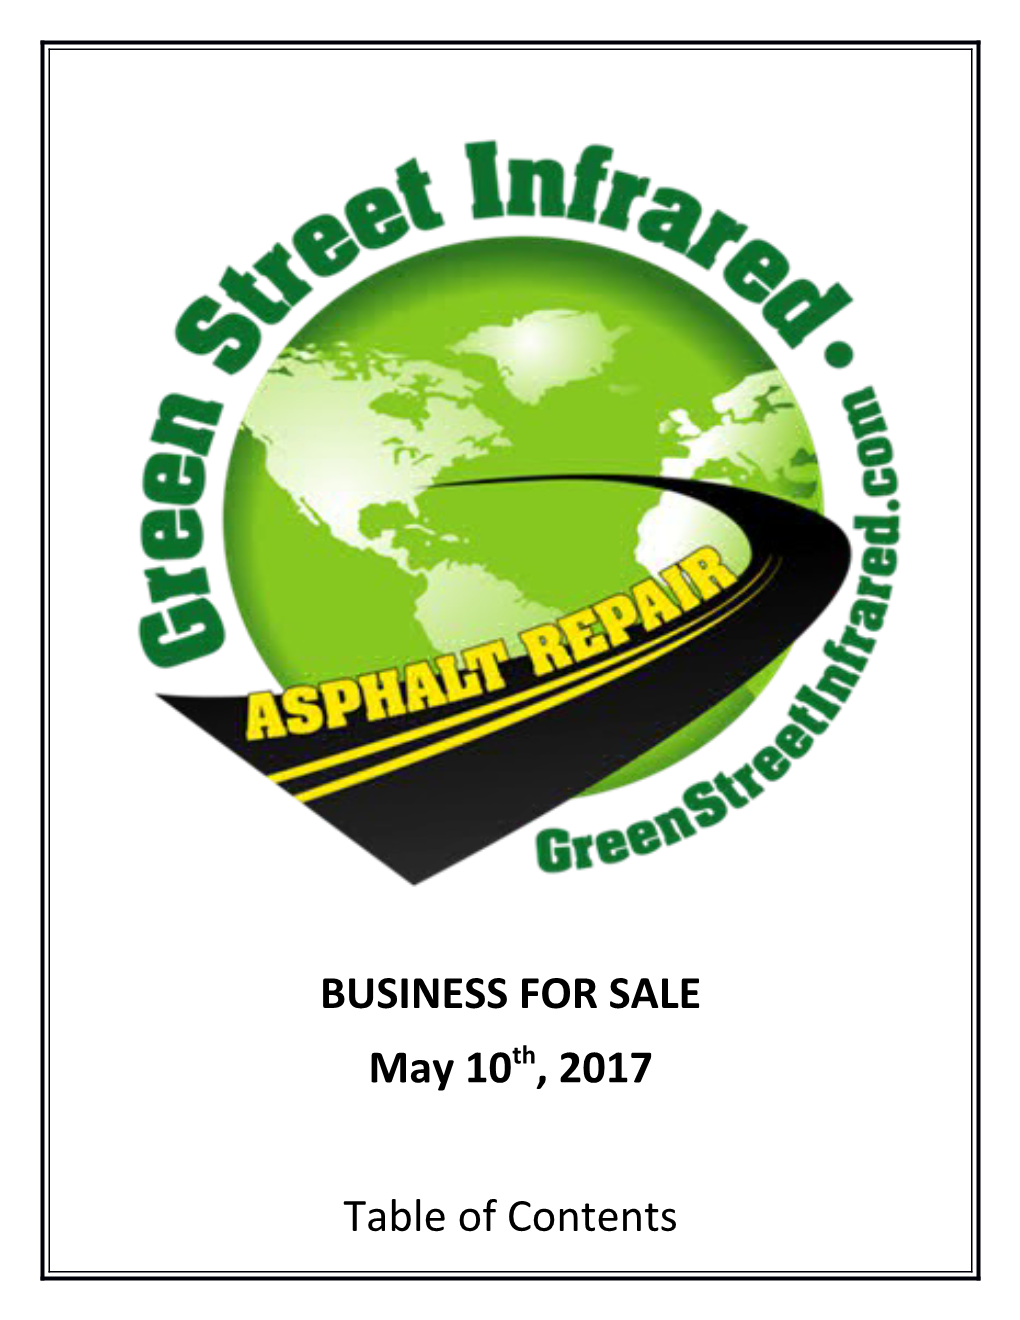 Green Street Infrared, LLC